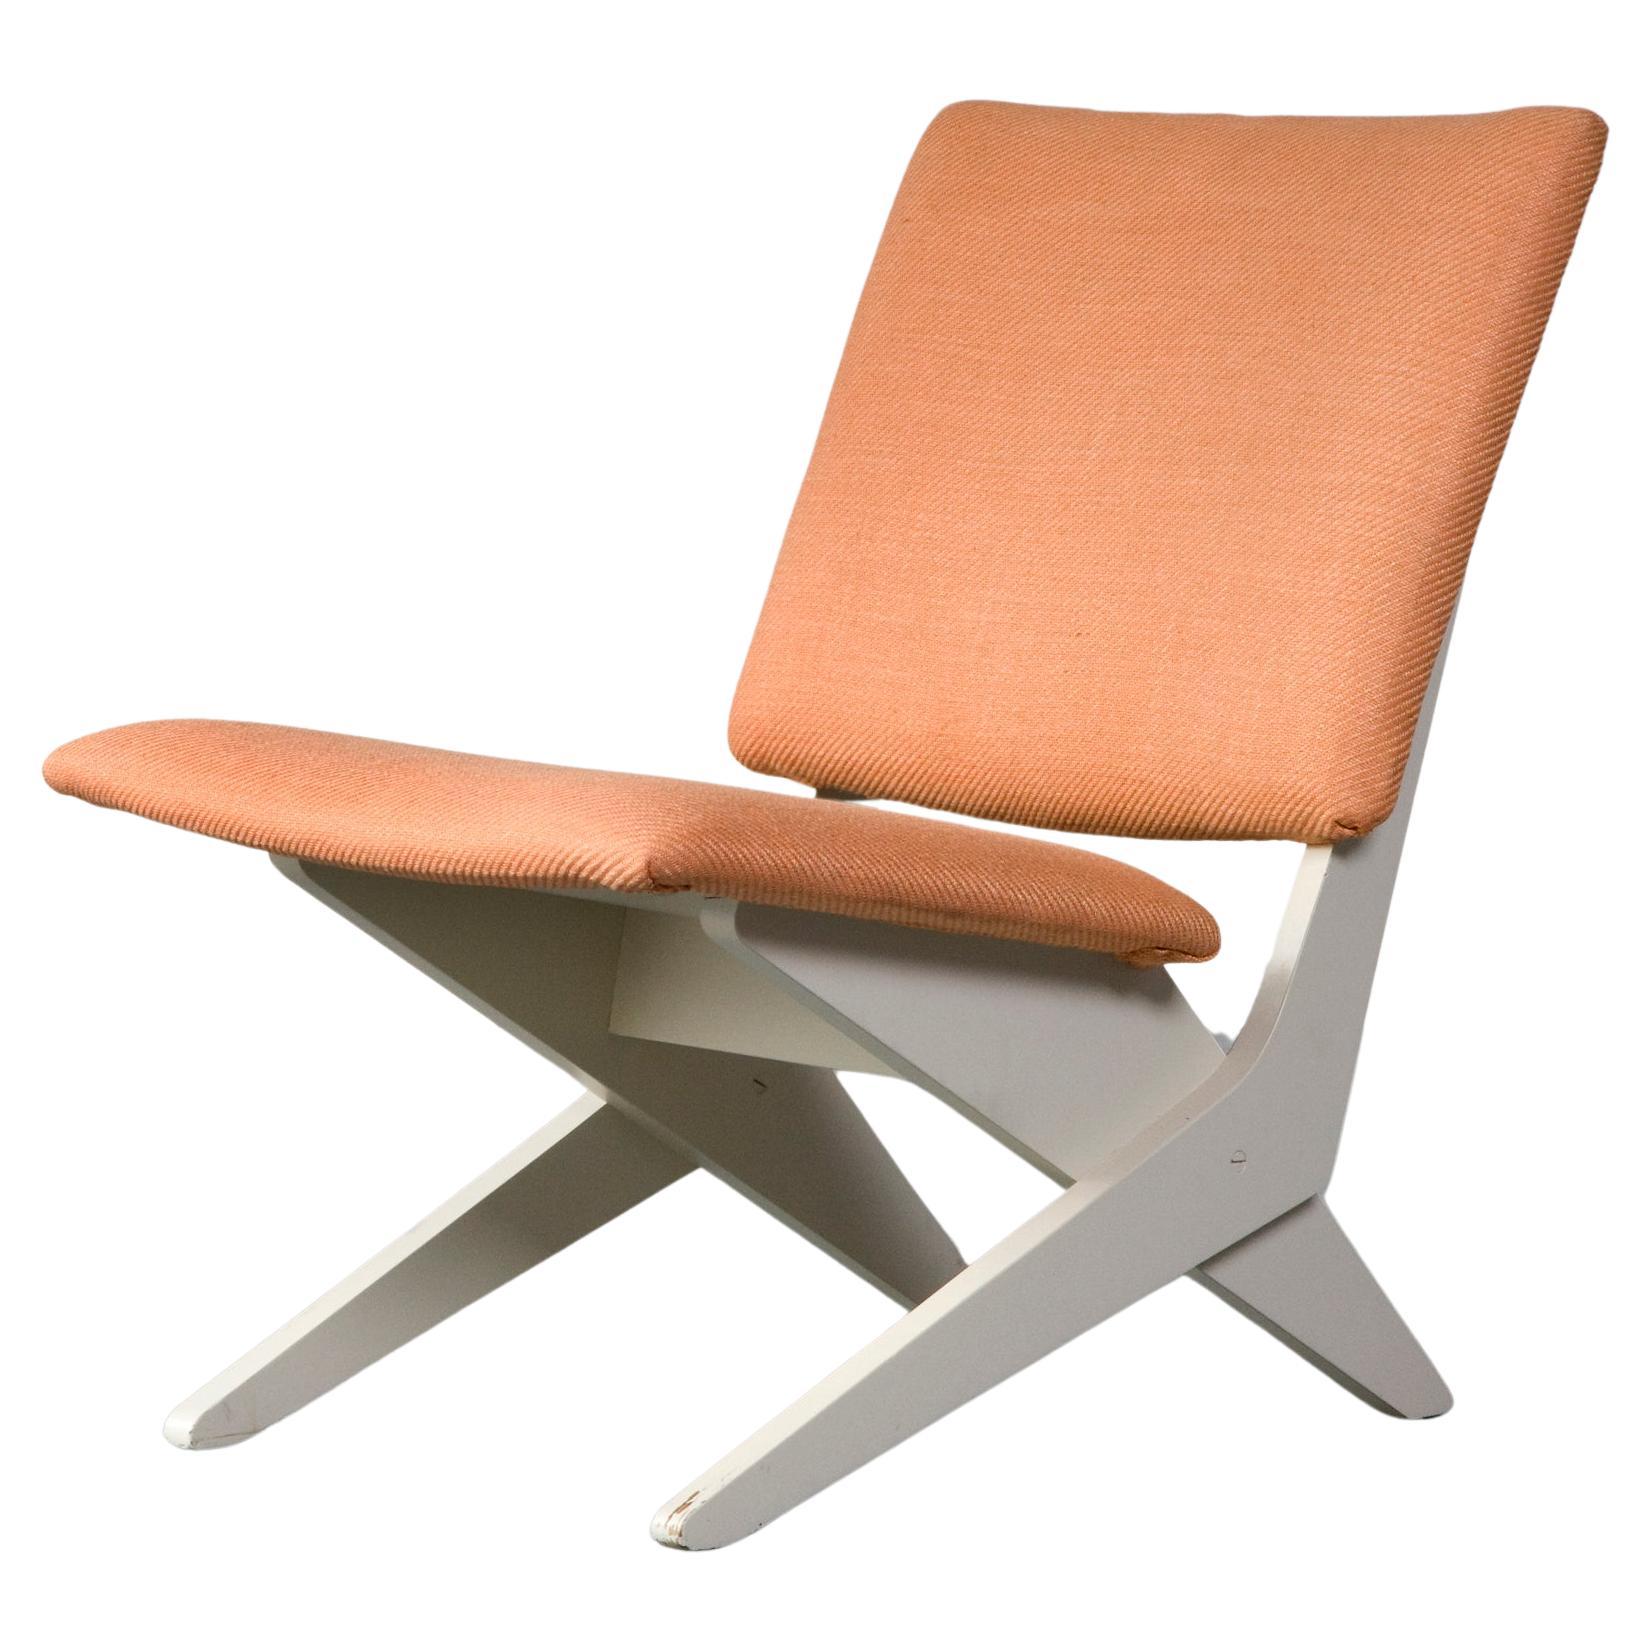 Upholstered chair by Peter van Grunsven